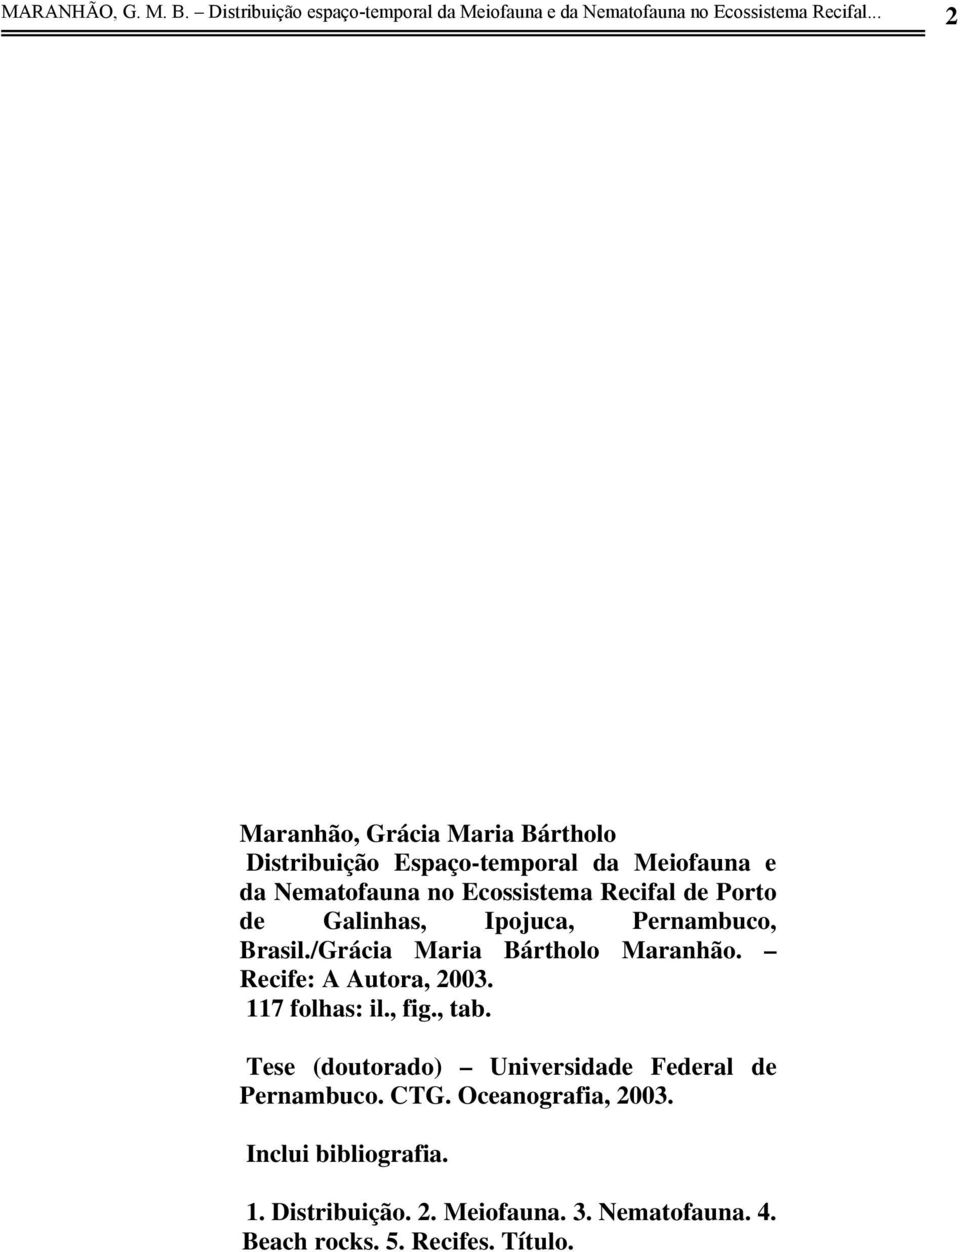 Galinhas, Ipojuca, Pernambuco, Brasil./Grácia Maria Bártholo Maranhão. Recife: A Autora, 2003. 117 folhas: il., fig., tab.